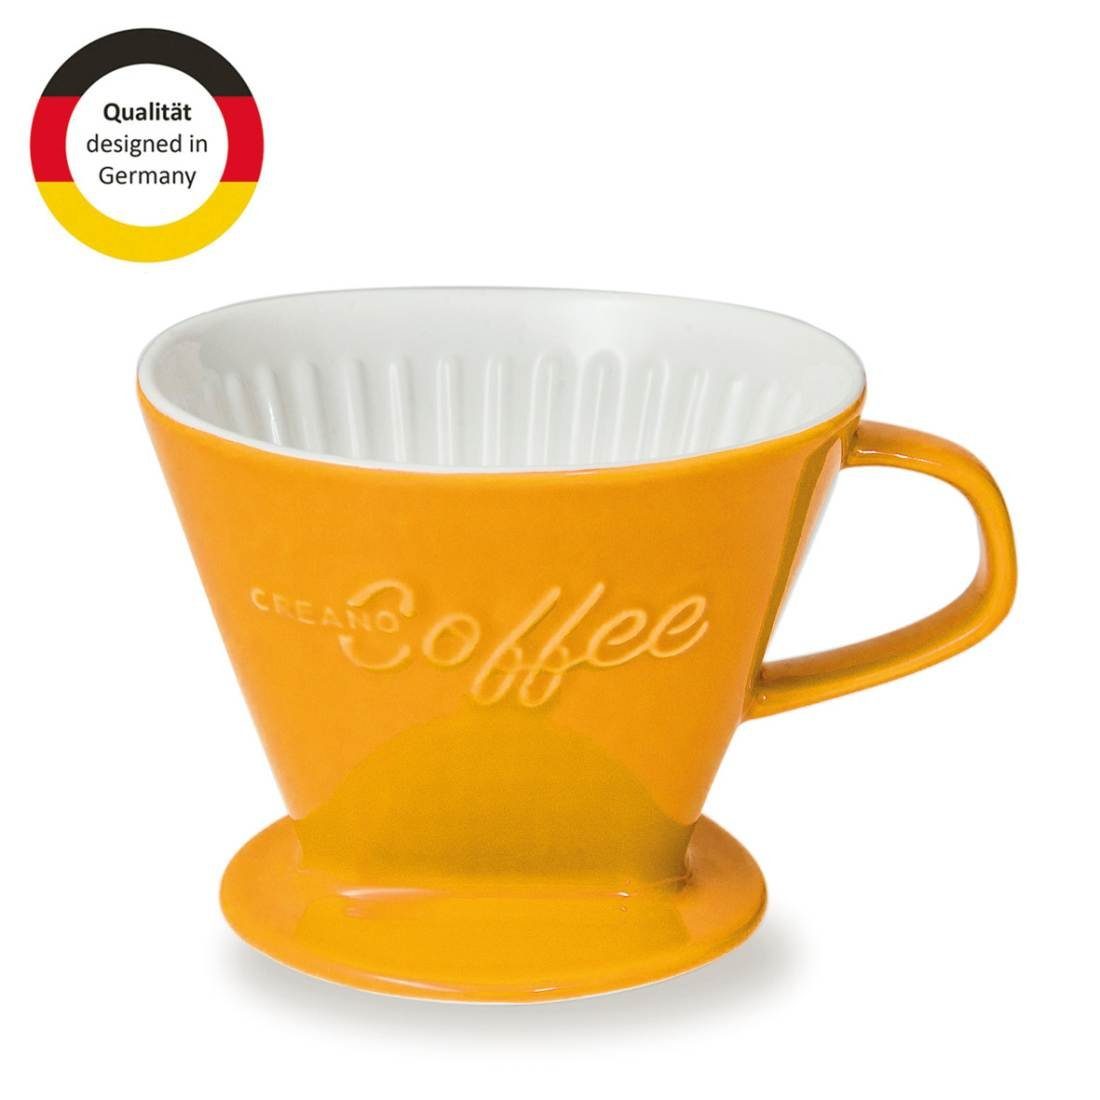 Creano French Press Kanne Kaffeefilter Manuell (Safrangelb), Größe 4 Creano 4 Filter Filtert, Porzellan für